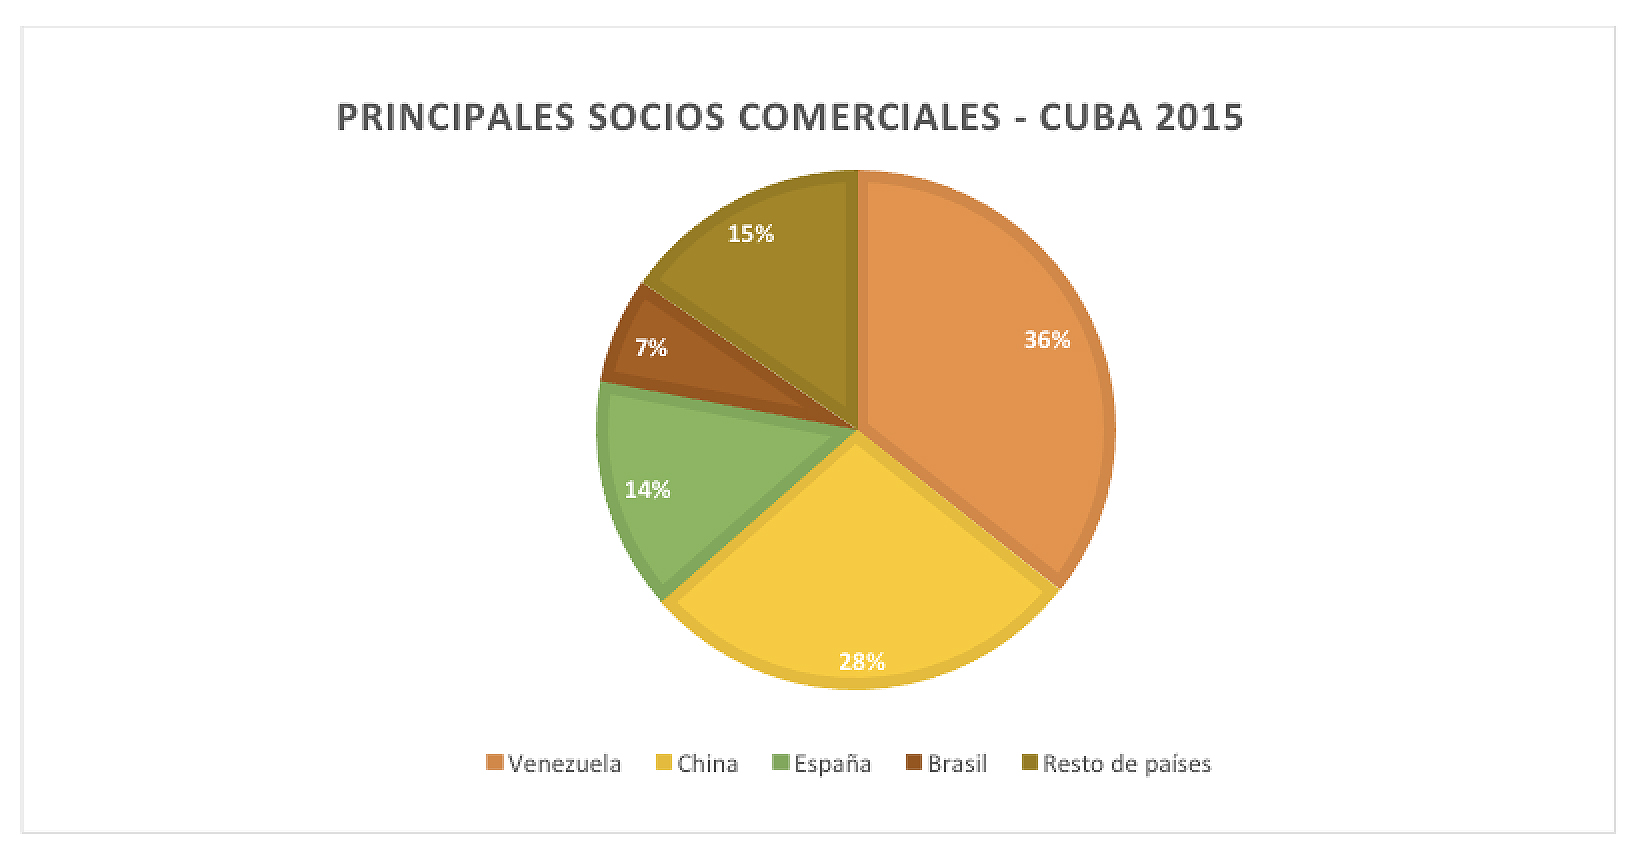 Cuba's main trading partners, 2015